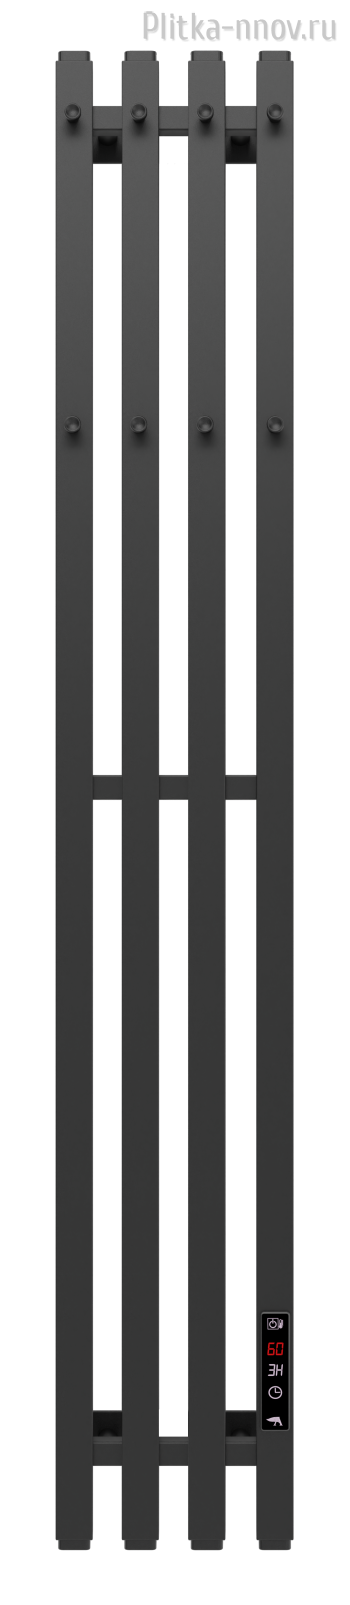 Лео Квадро Гранд 4 120 Черный матовый Полотенцесушитель электрический АРГО